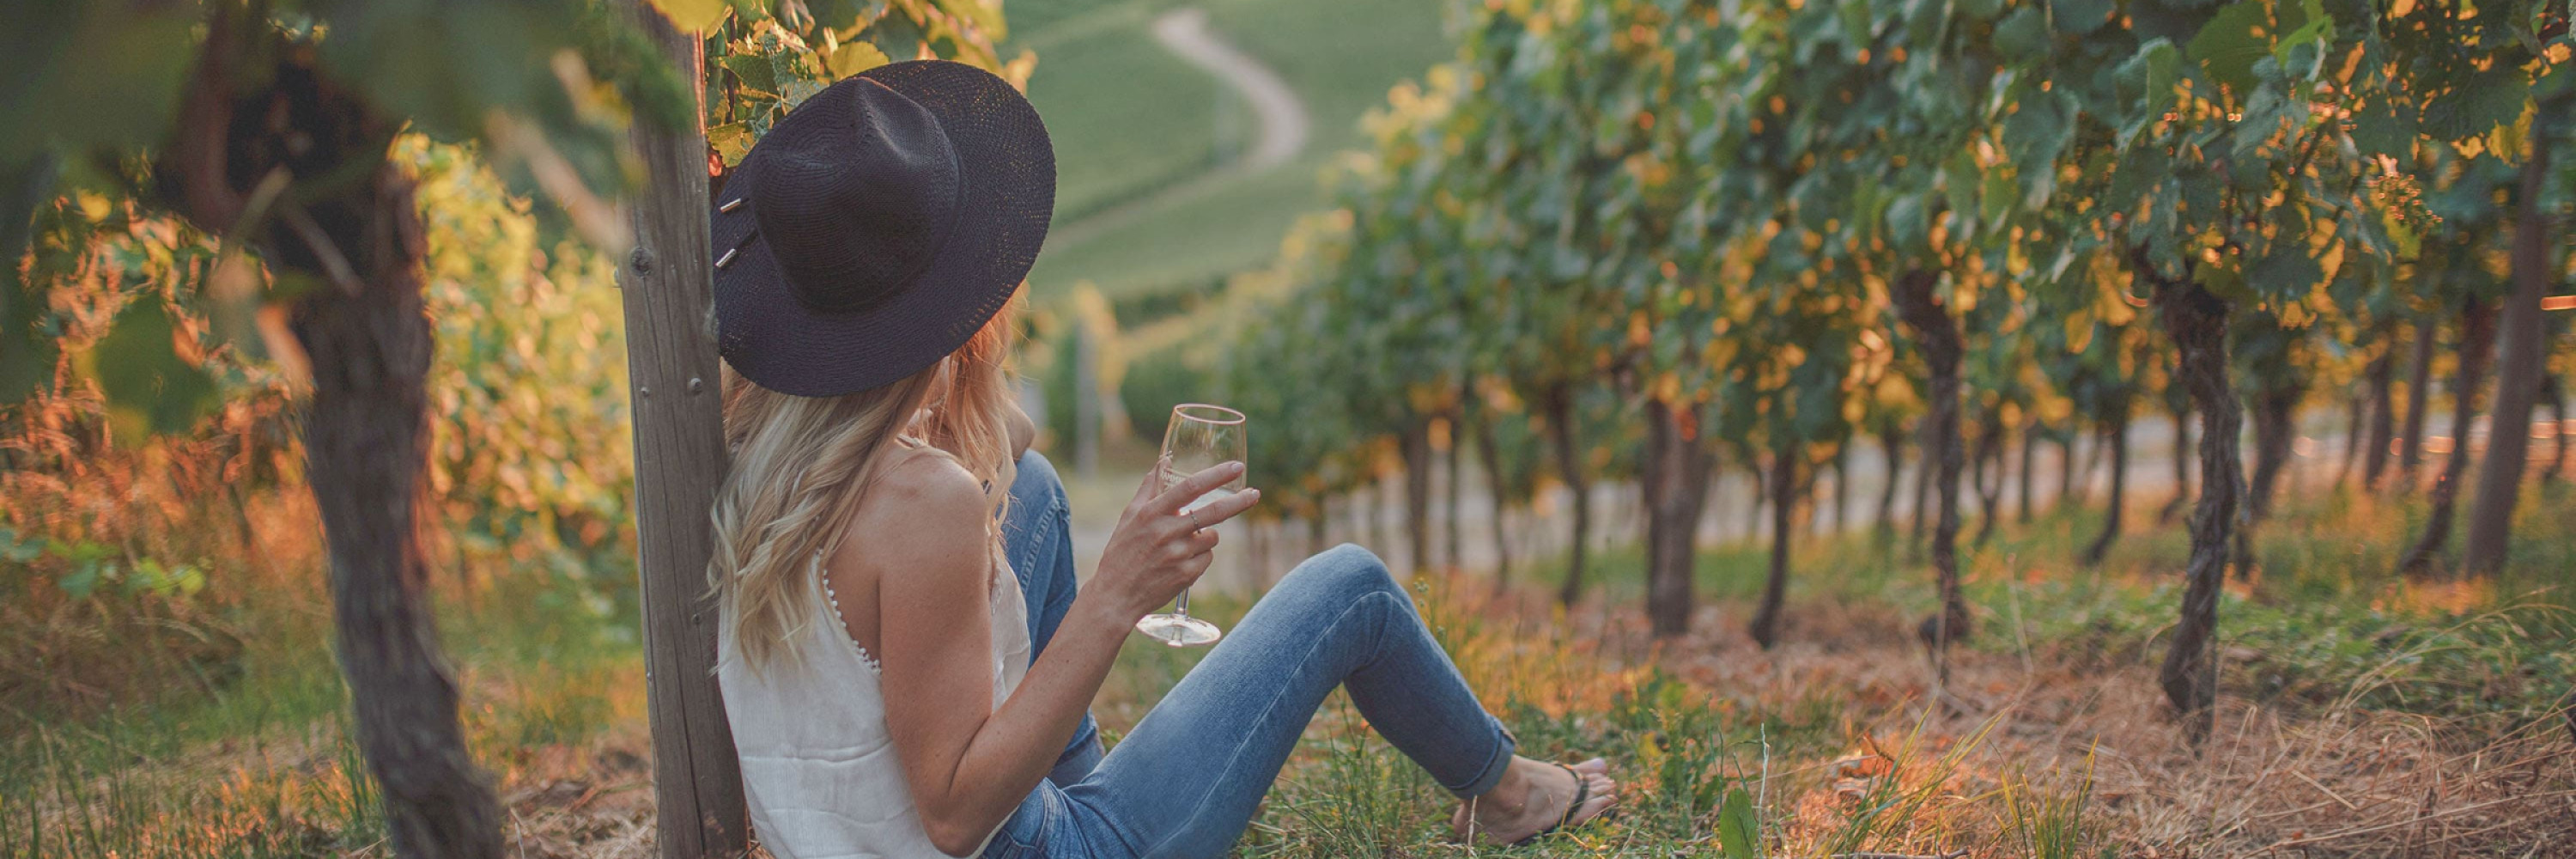 eurocave-femme-dans-les-vignes-verre-de-vin-blanc-coucher-de-soleil-chapeau-france.jpg